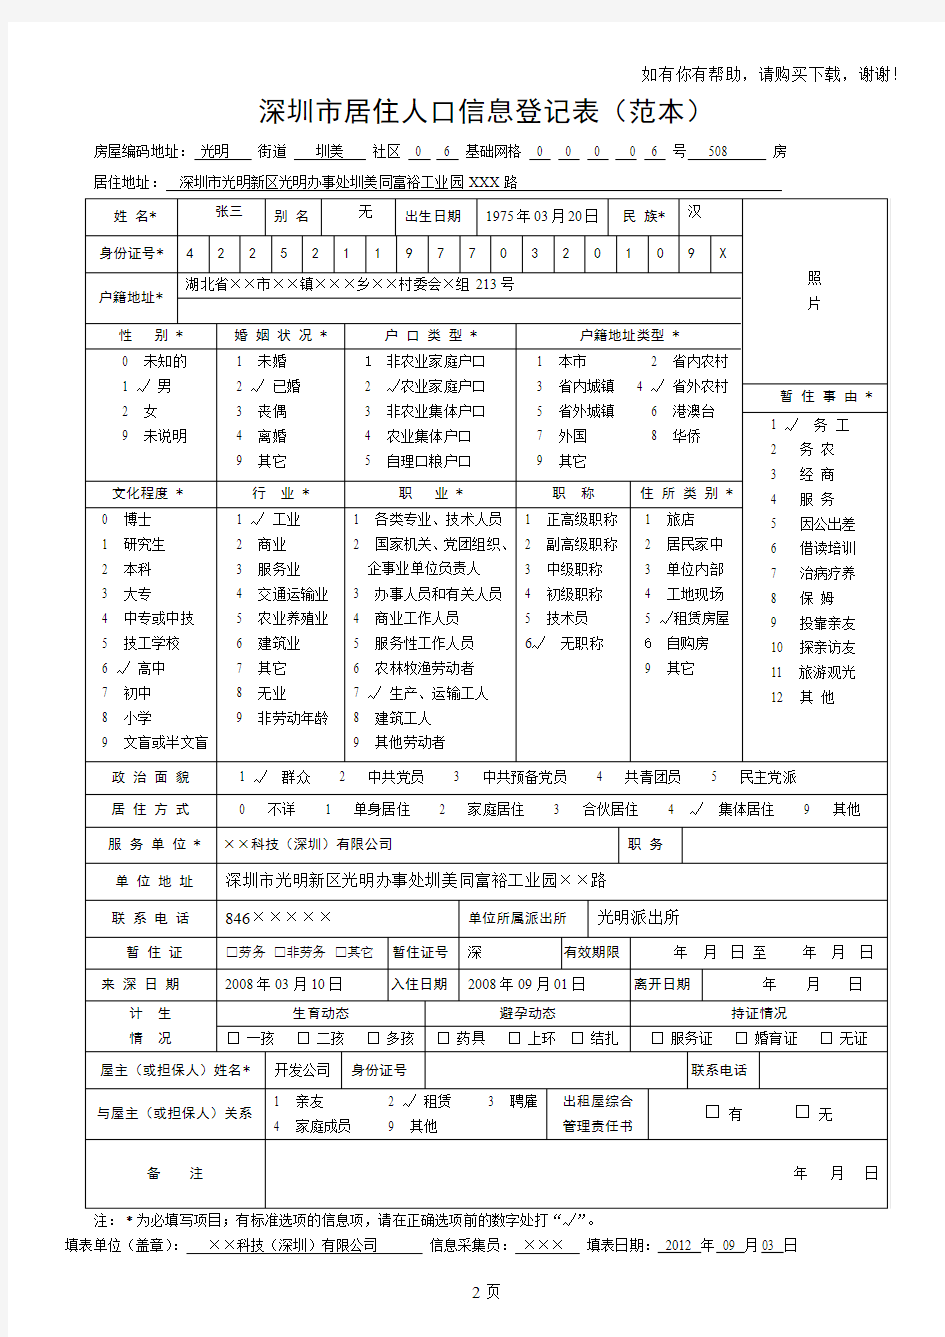 深圳市居住人口信息登记表